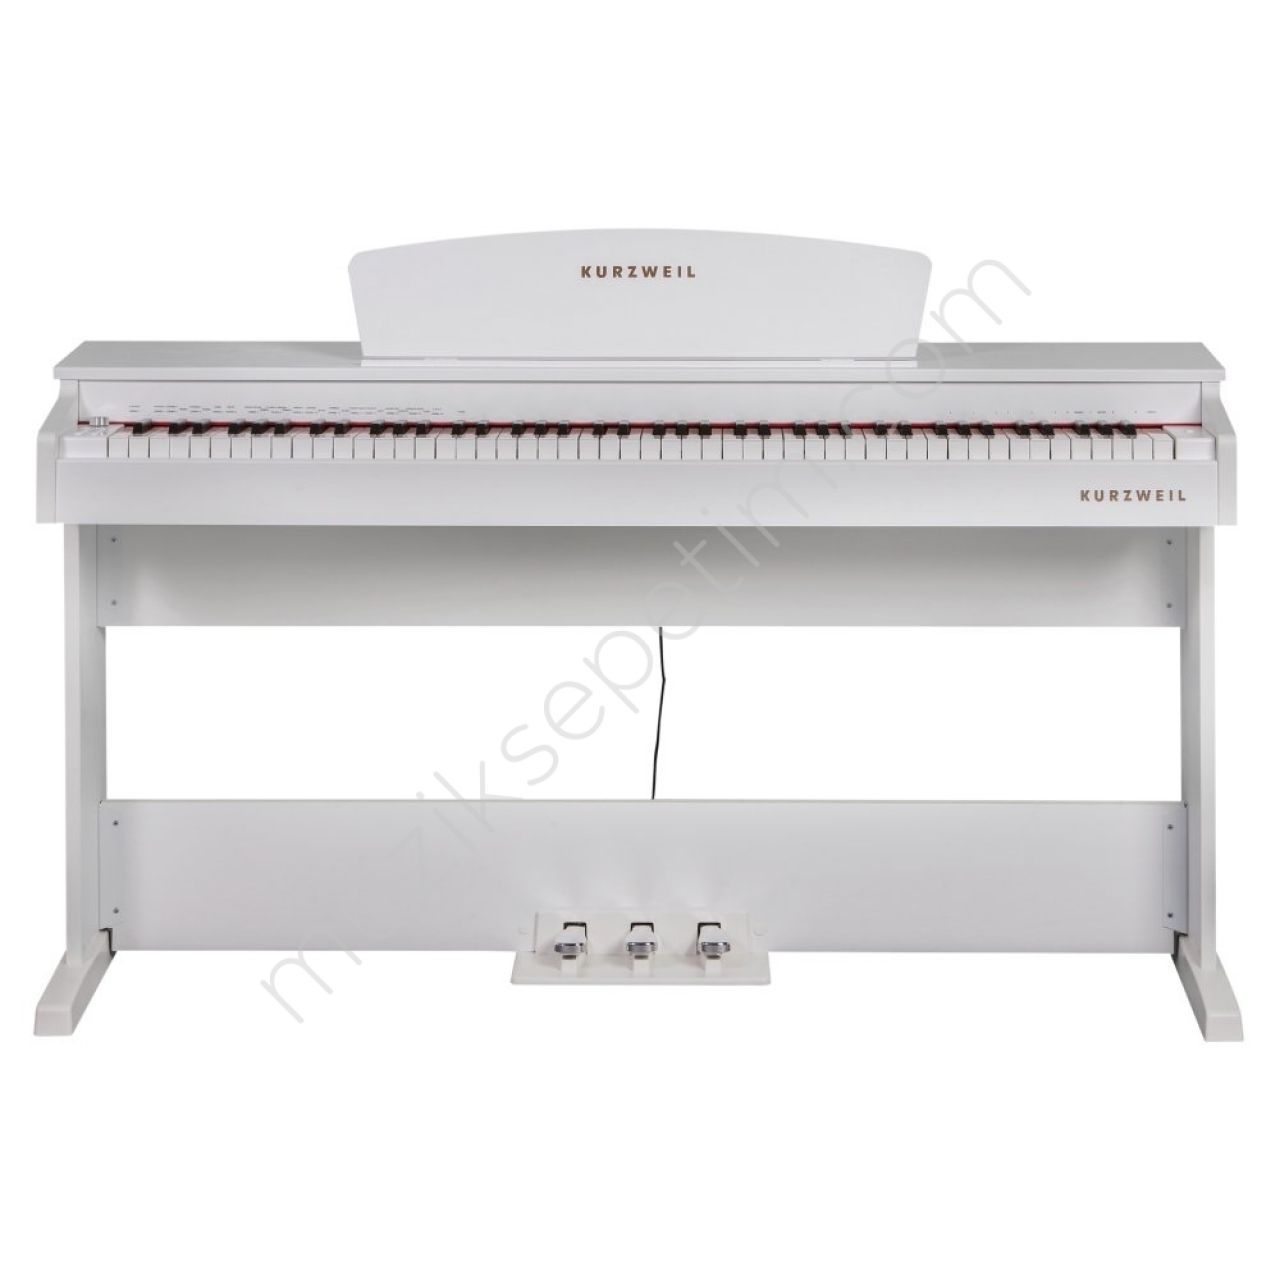 Kurzweil M70 Dijital Piyano - Beyaz